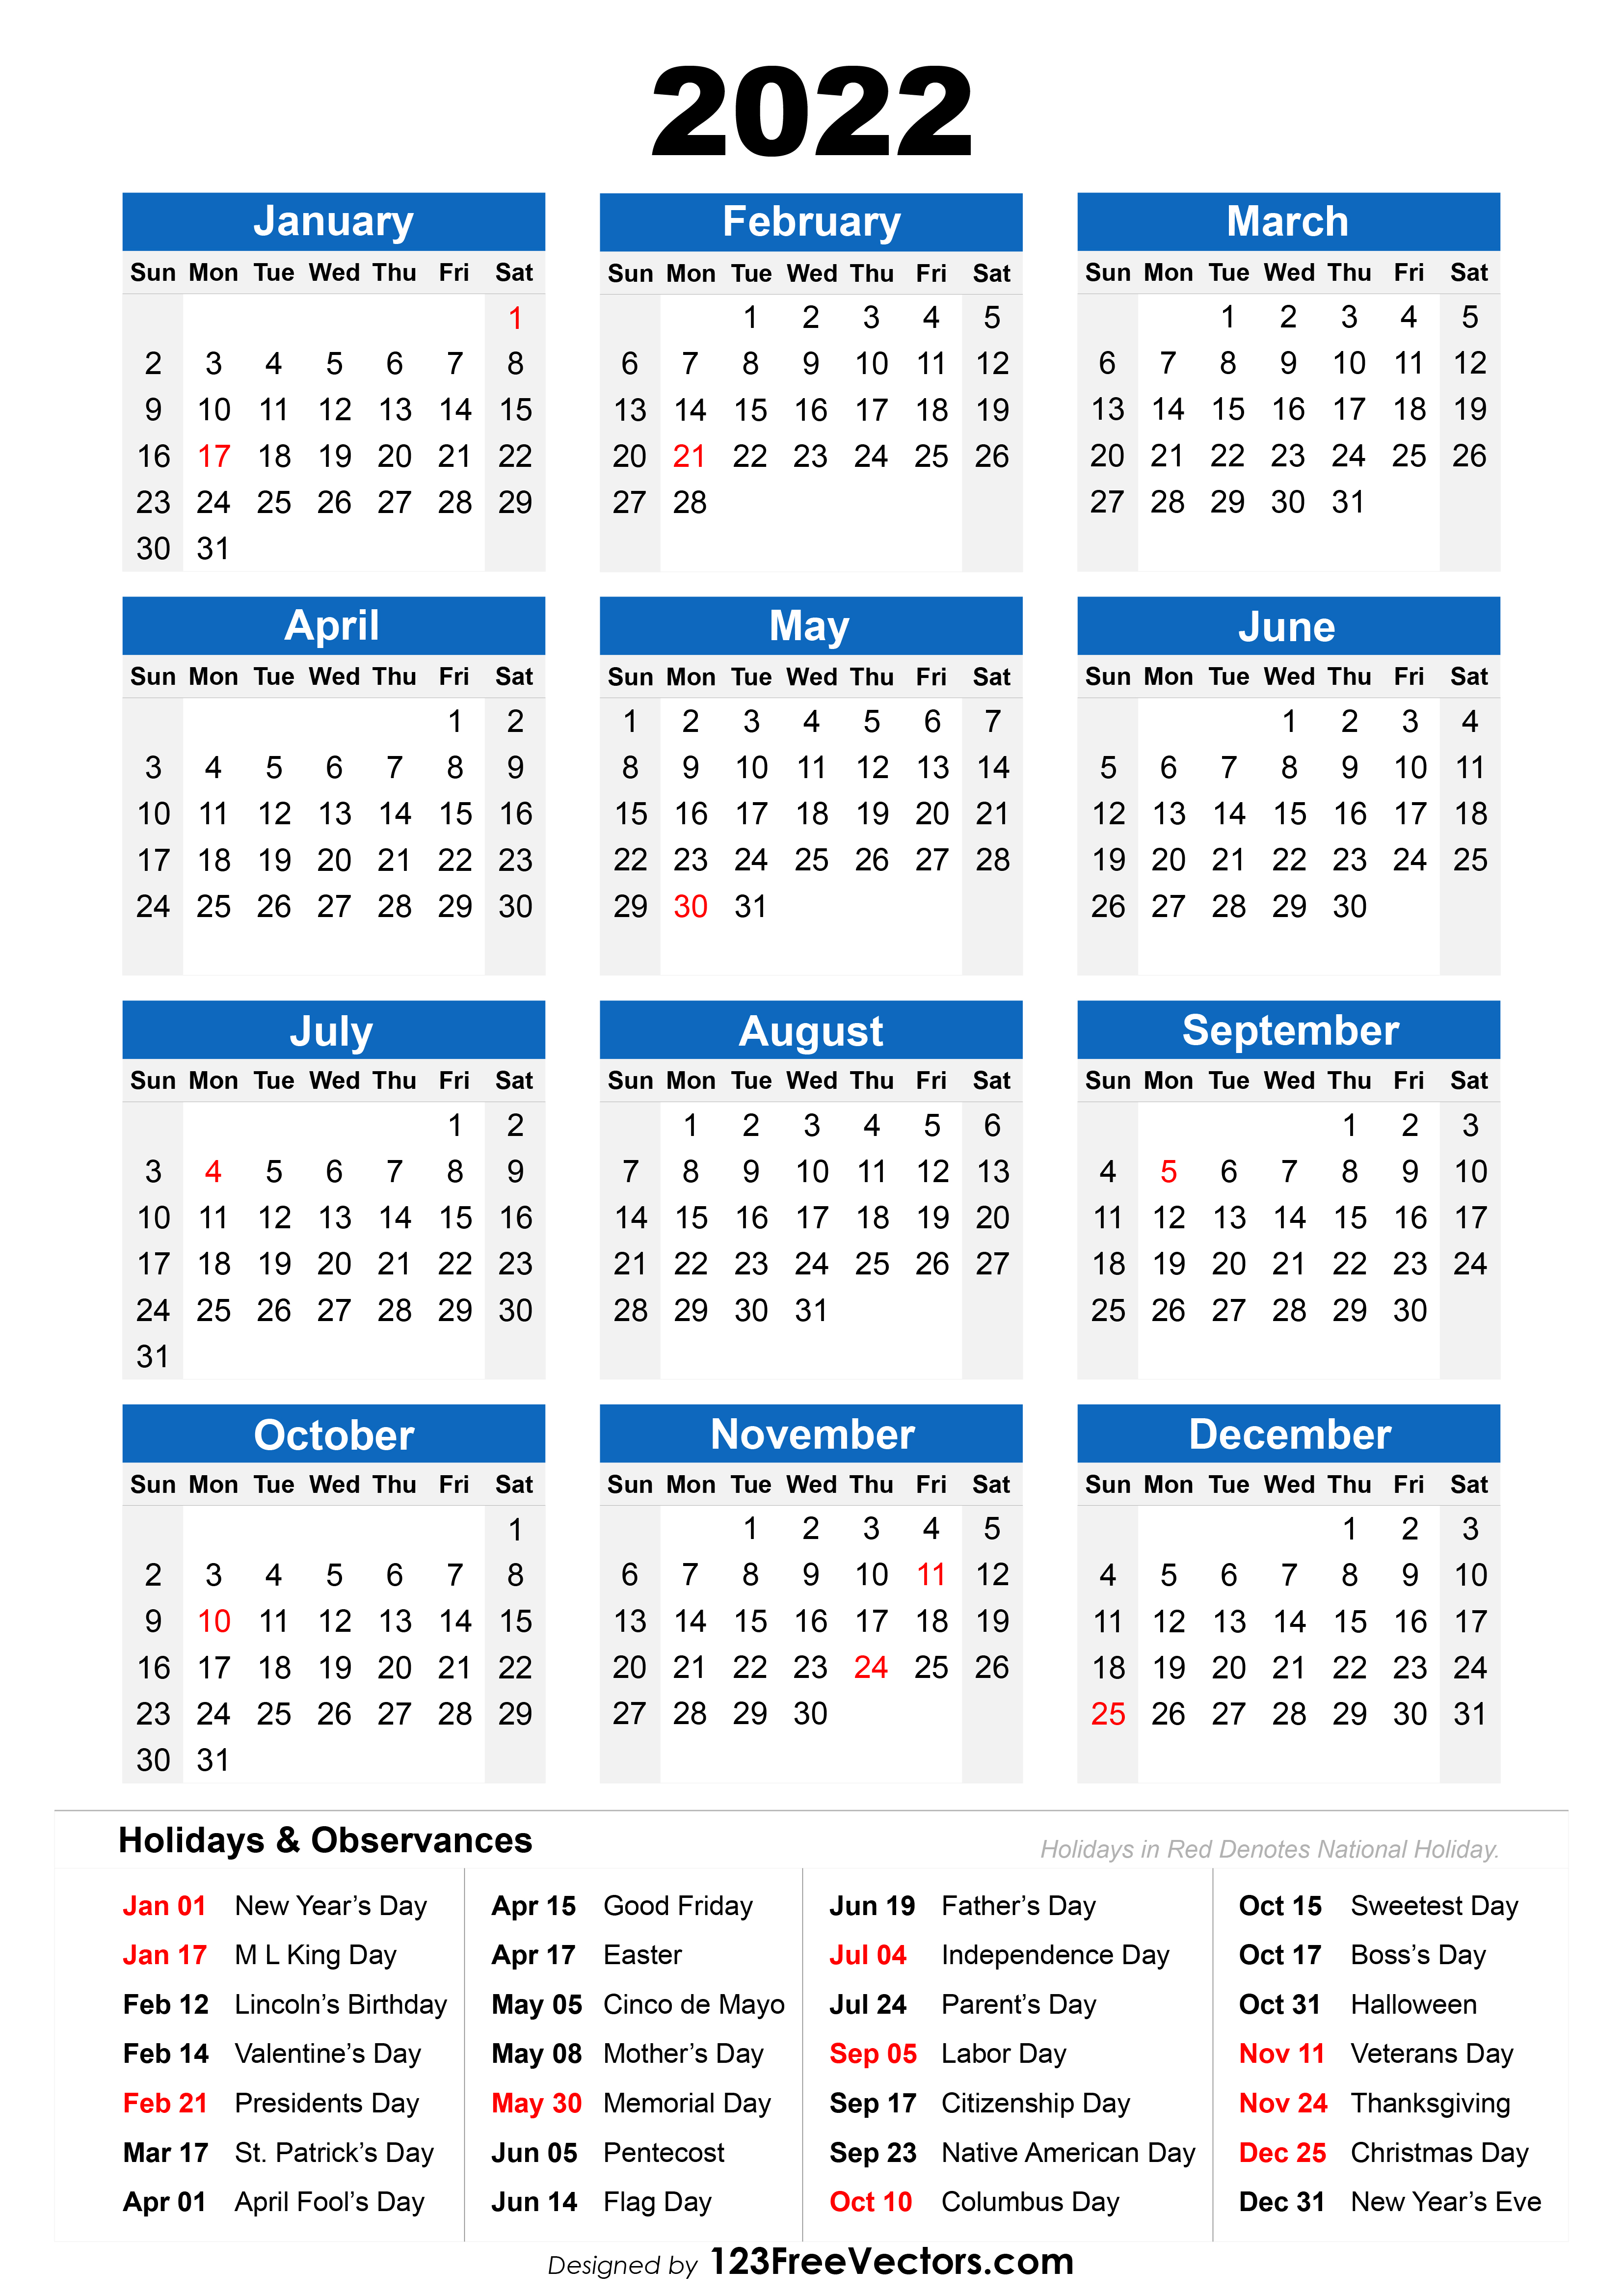 Holiday Calendar For 2022 Free 2022 Holiday Calendar